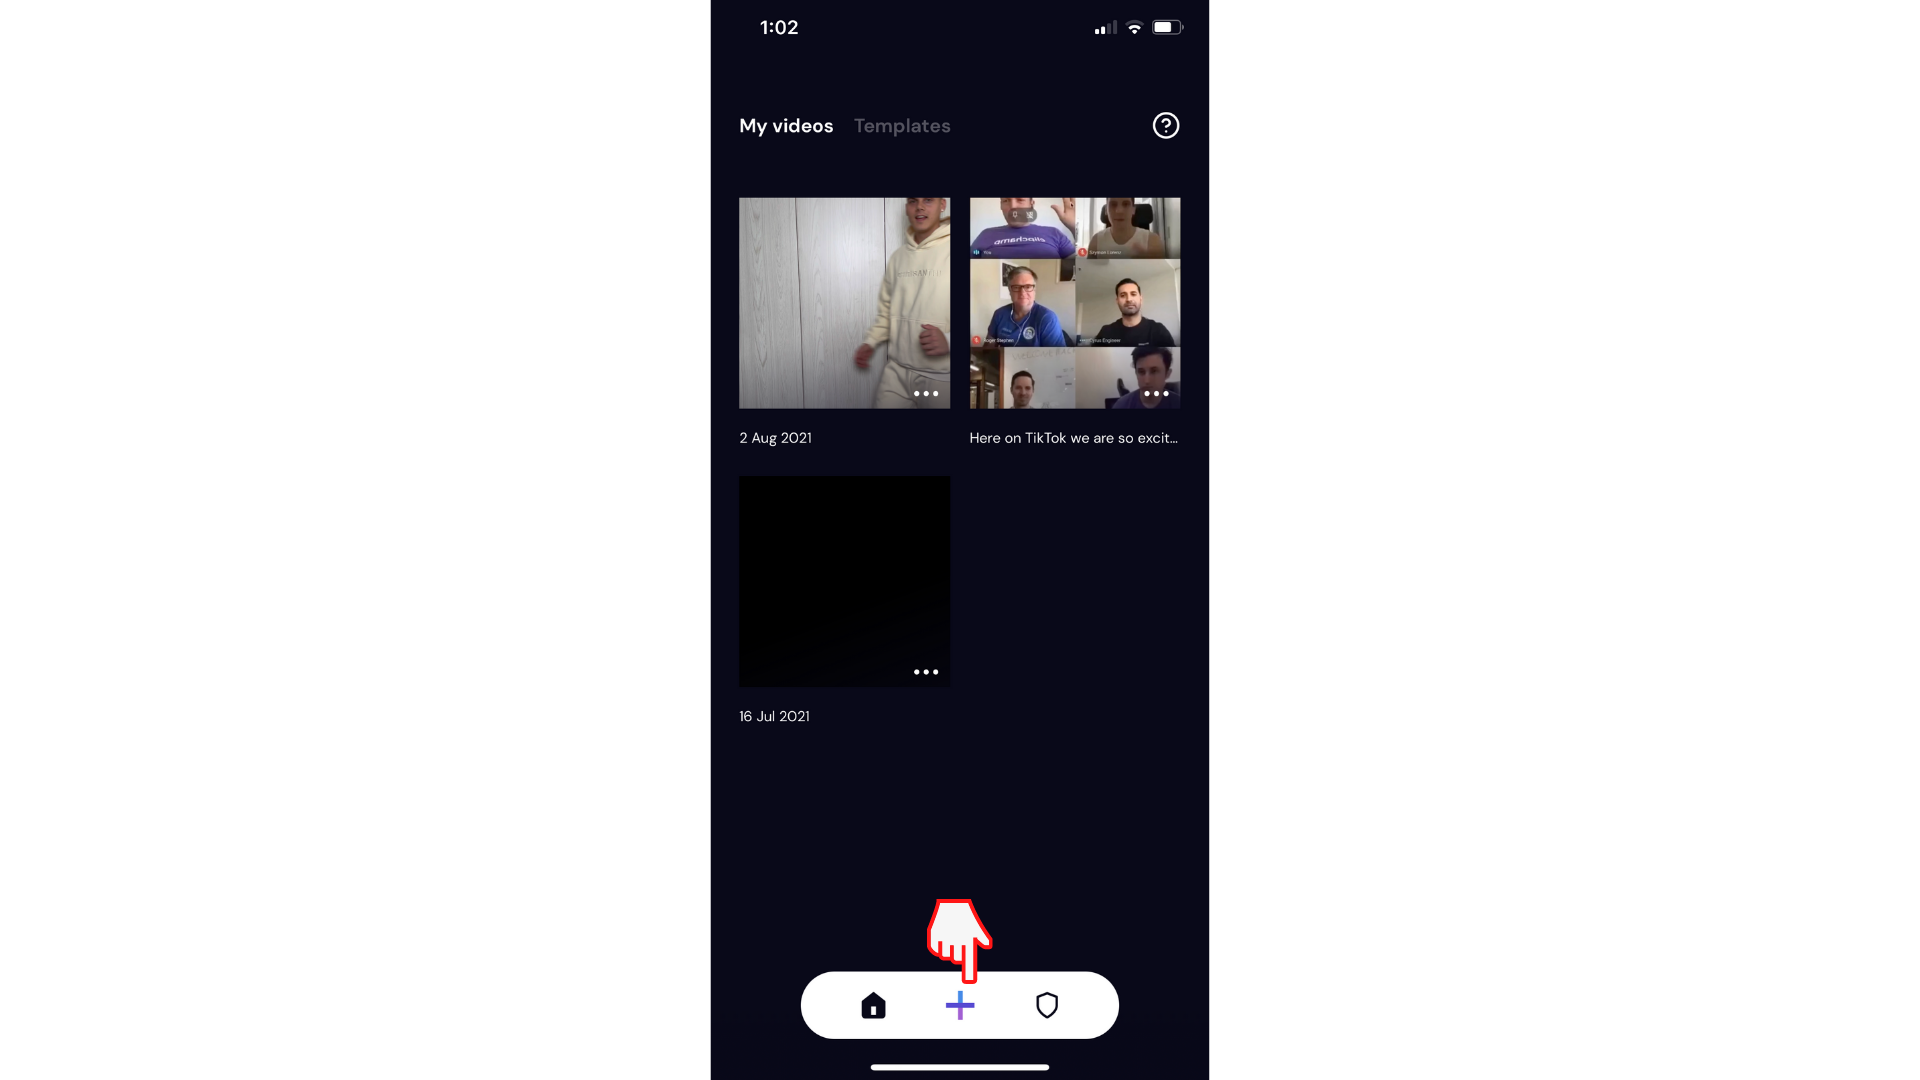 Korisnik koji stvara novi videozapis u aplikaciji Clipchamp iOS klikom na gumb plus